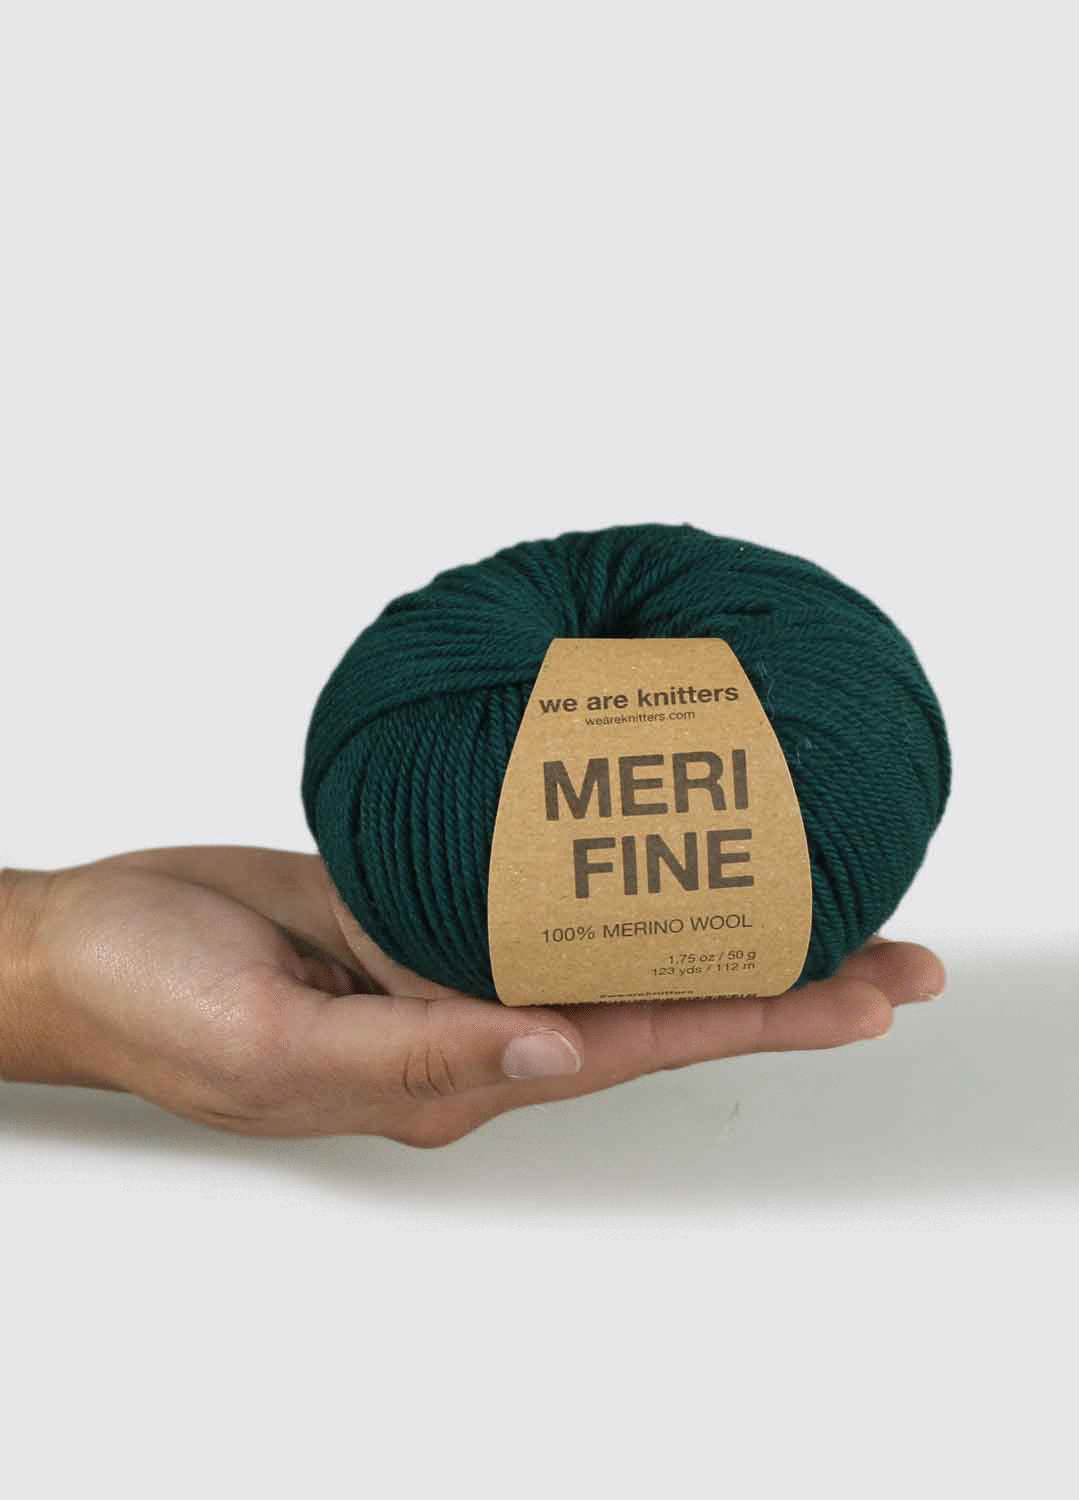 10 Pack of Merifine Yarn Balls